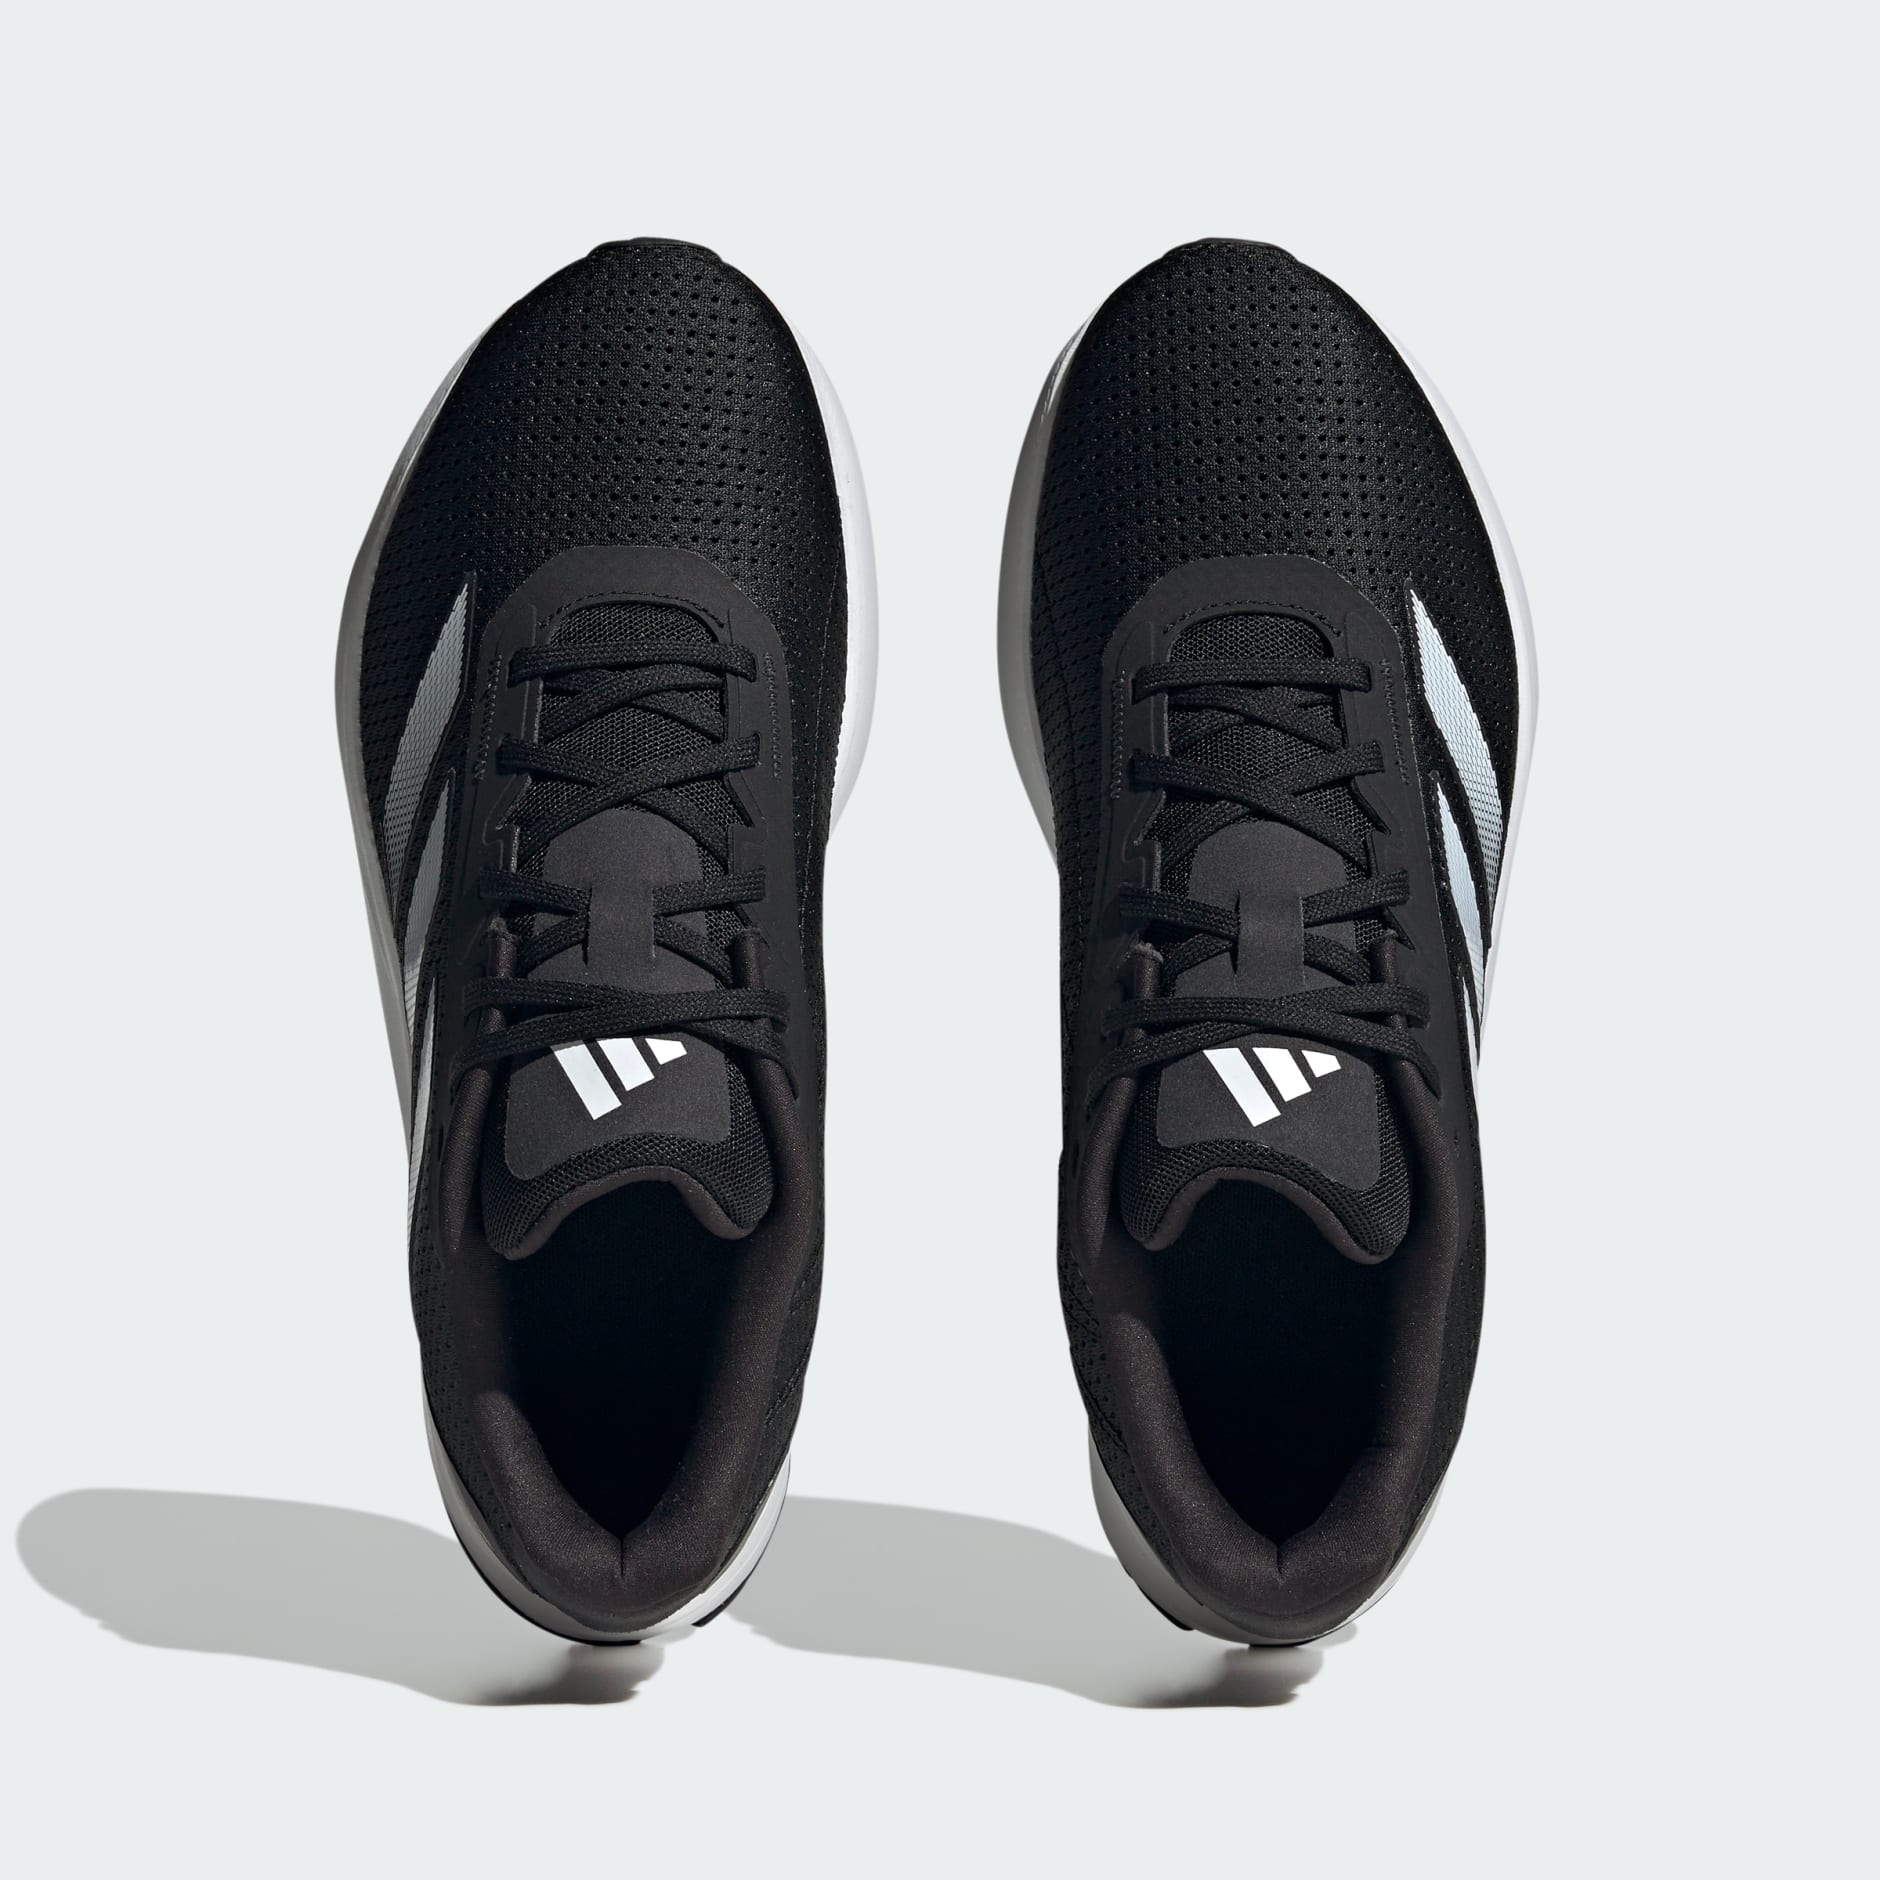 adidas rush m running shoes